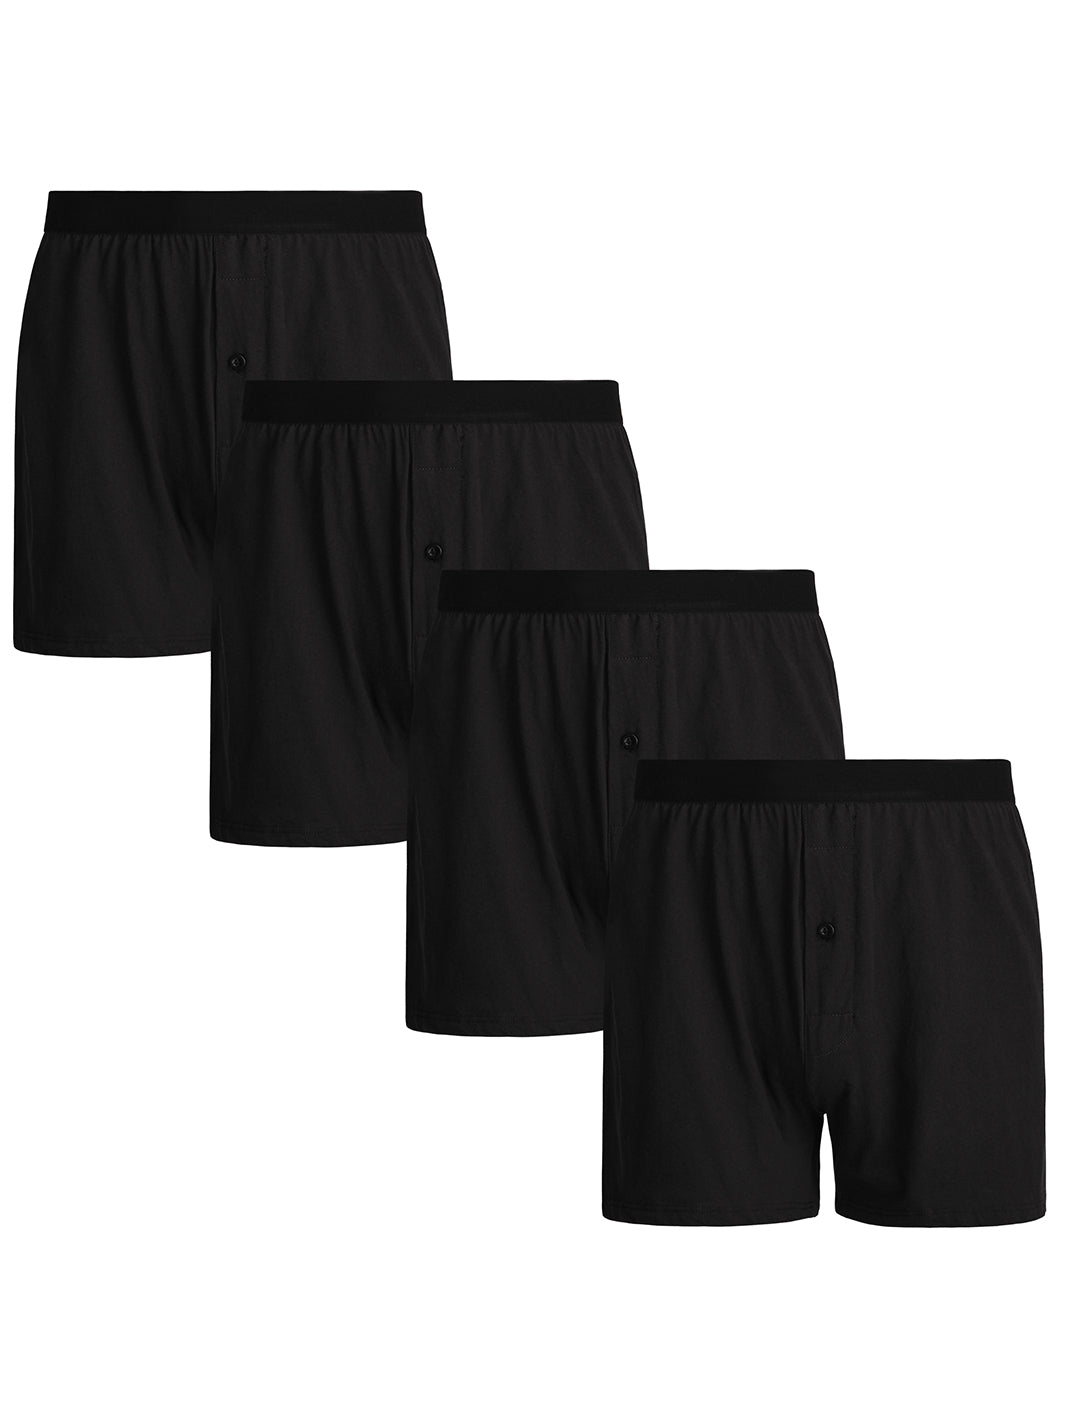 INNERSY Men's Underwear Briefs Soft Comfy Underwear Pack of 4 (M,  Black/Blue/Barely White/Dark Indigo)